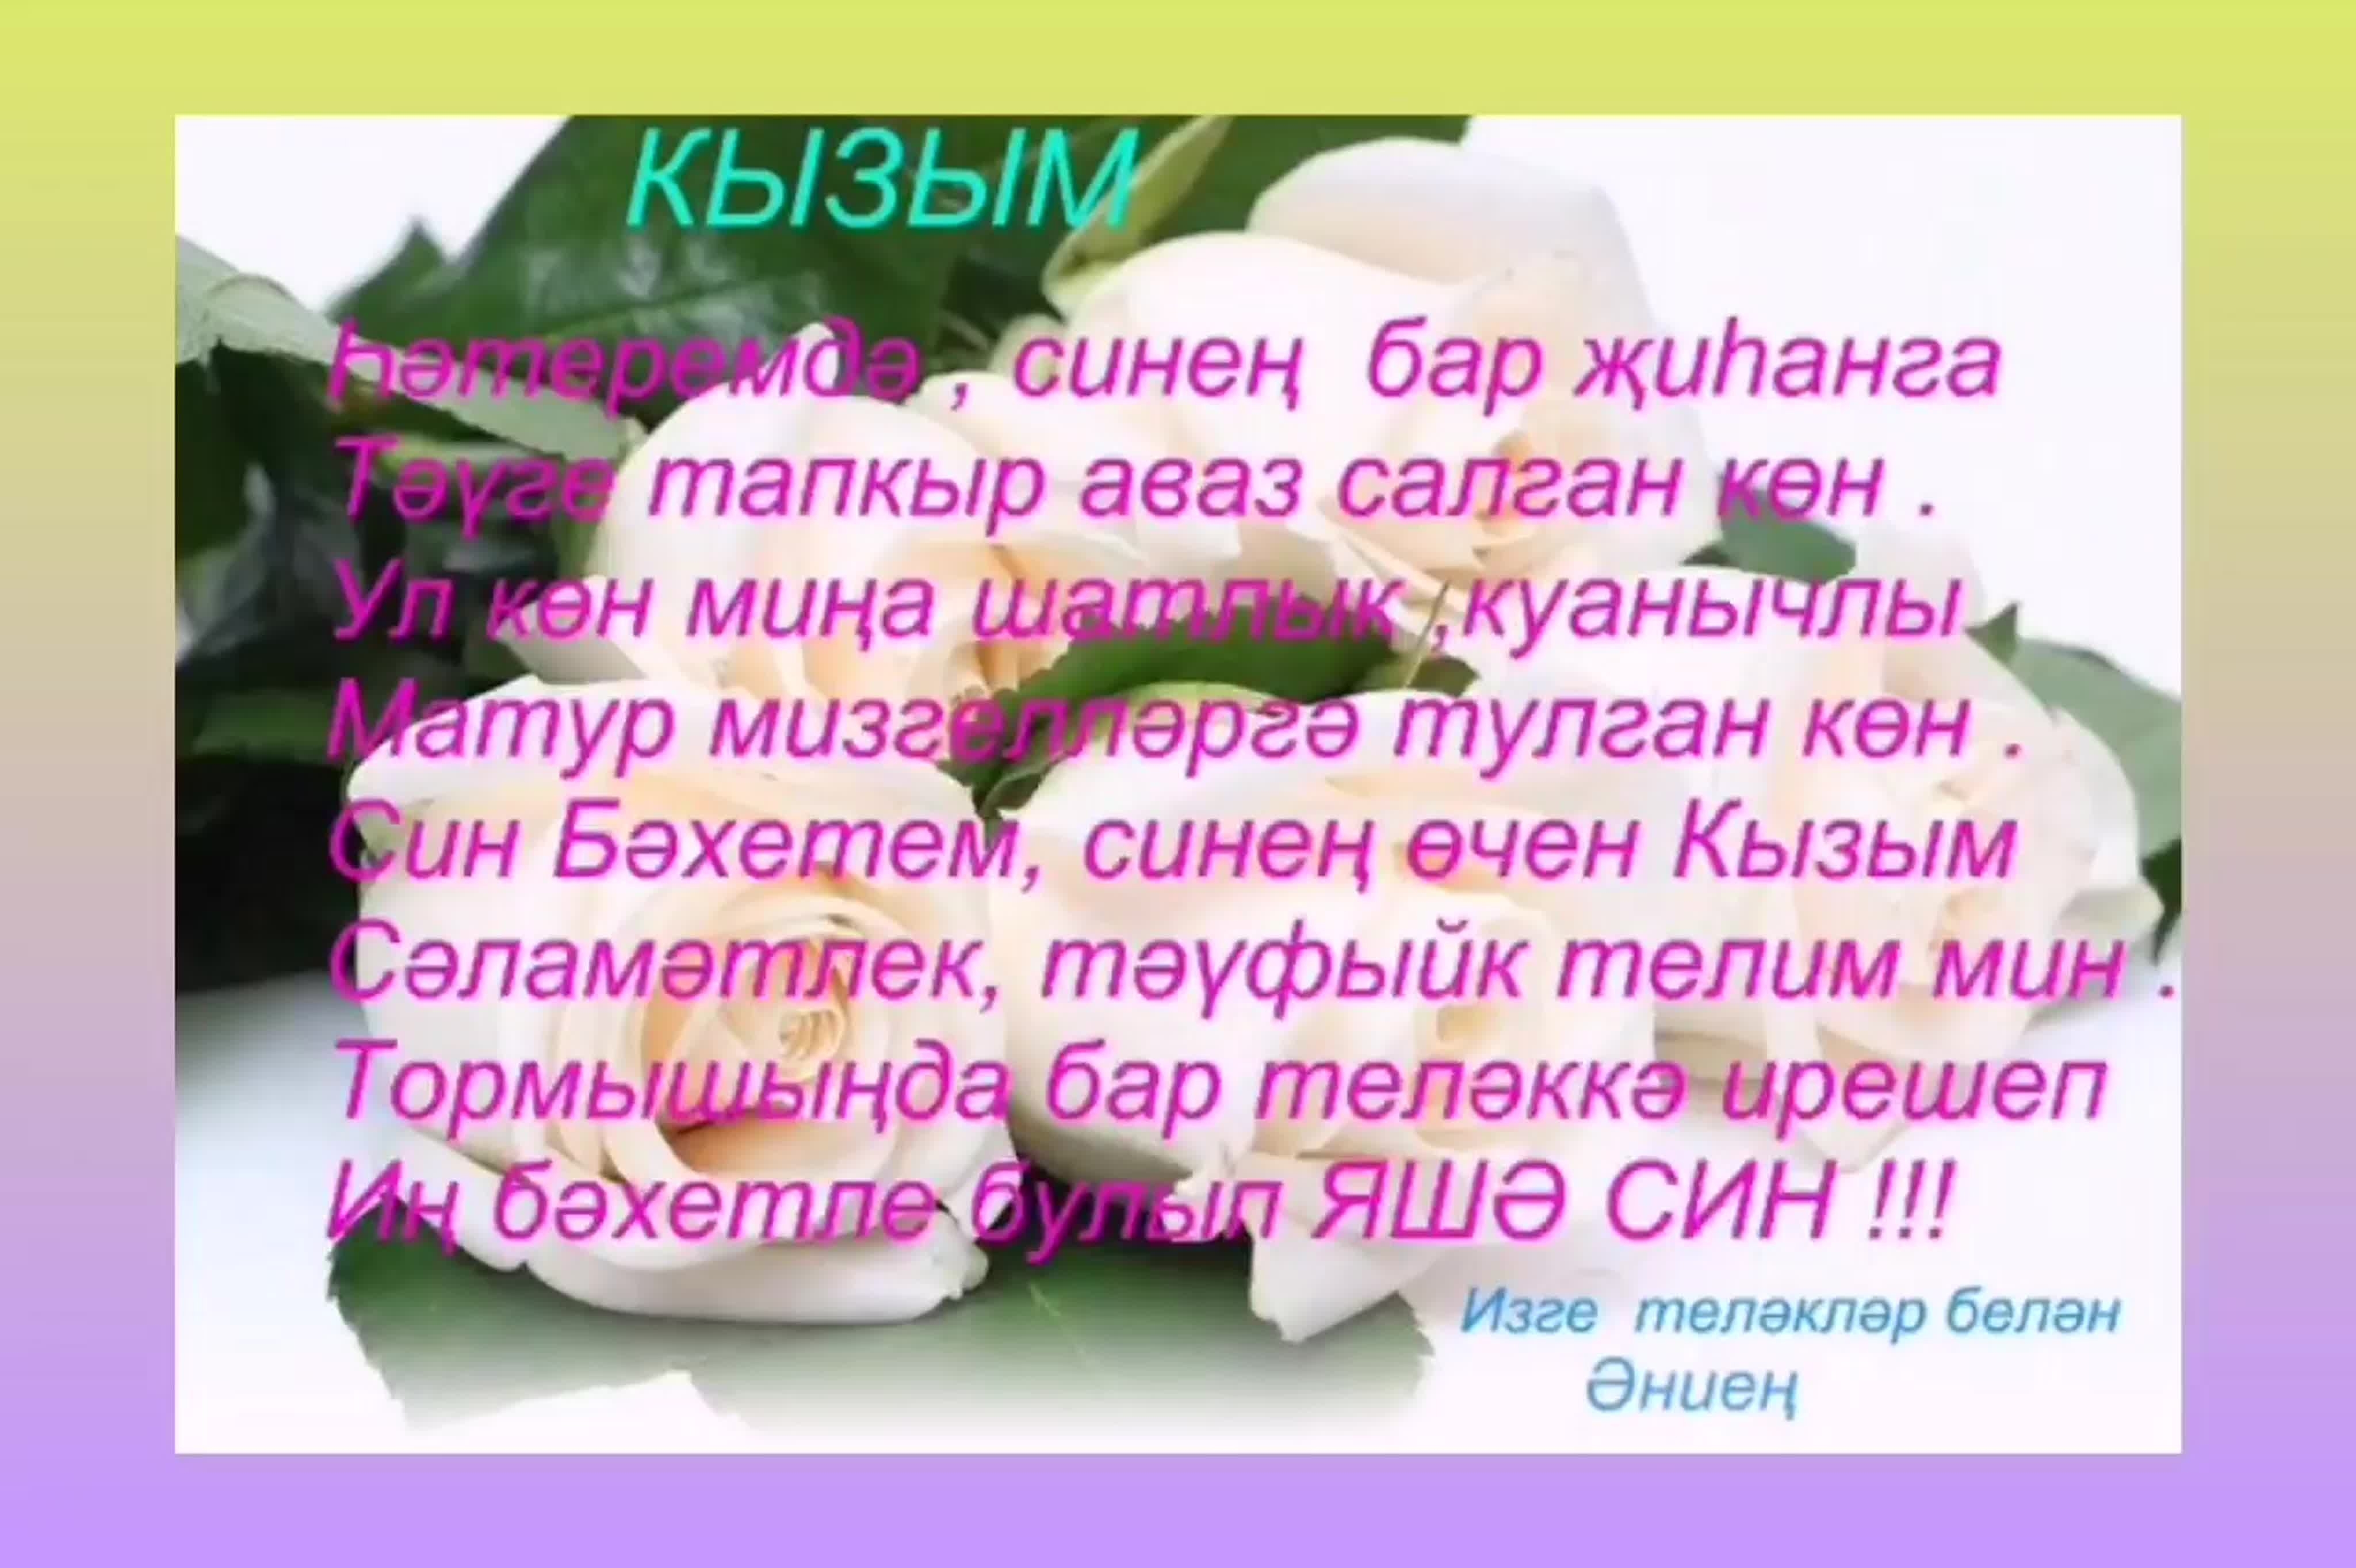 Туган конгэ телэклэр. С днём рождения на татарском языке. Туган. Красивые открытки с днём рождения кызым. Открытка Кызыма.